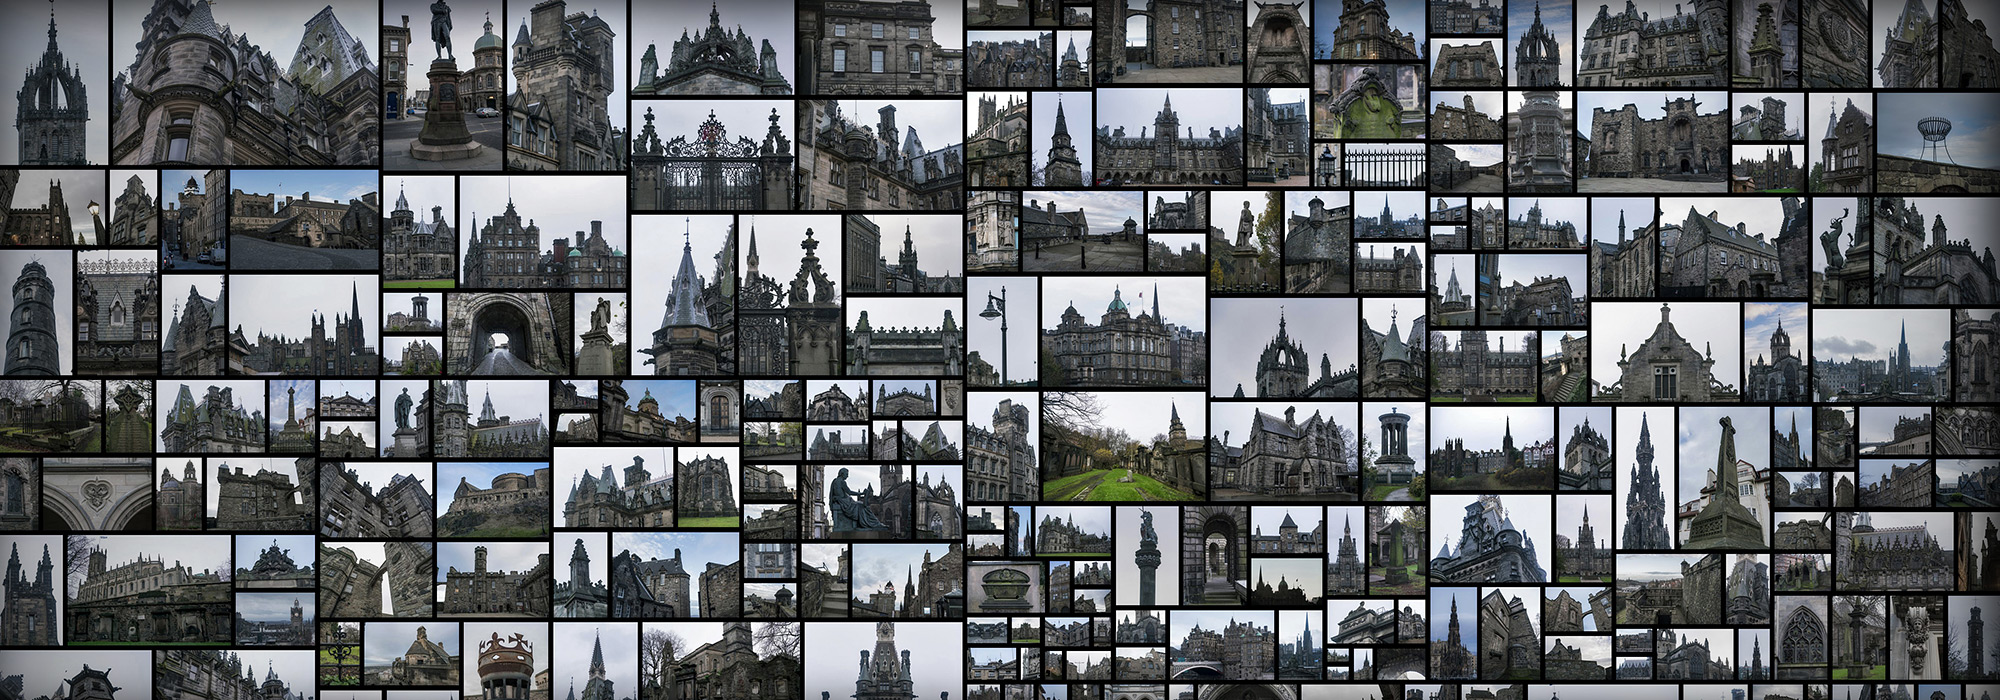 苏格兰哥特式 Scotland Gothic